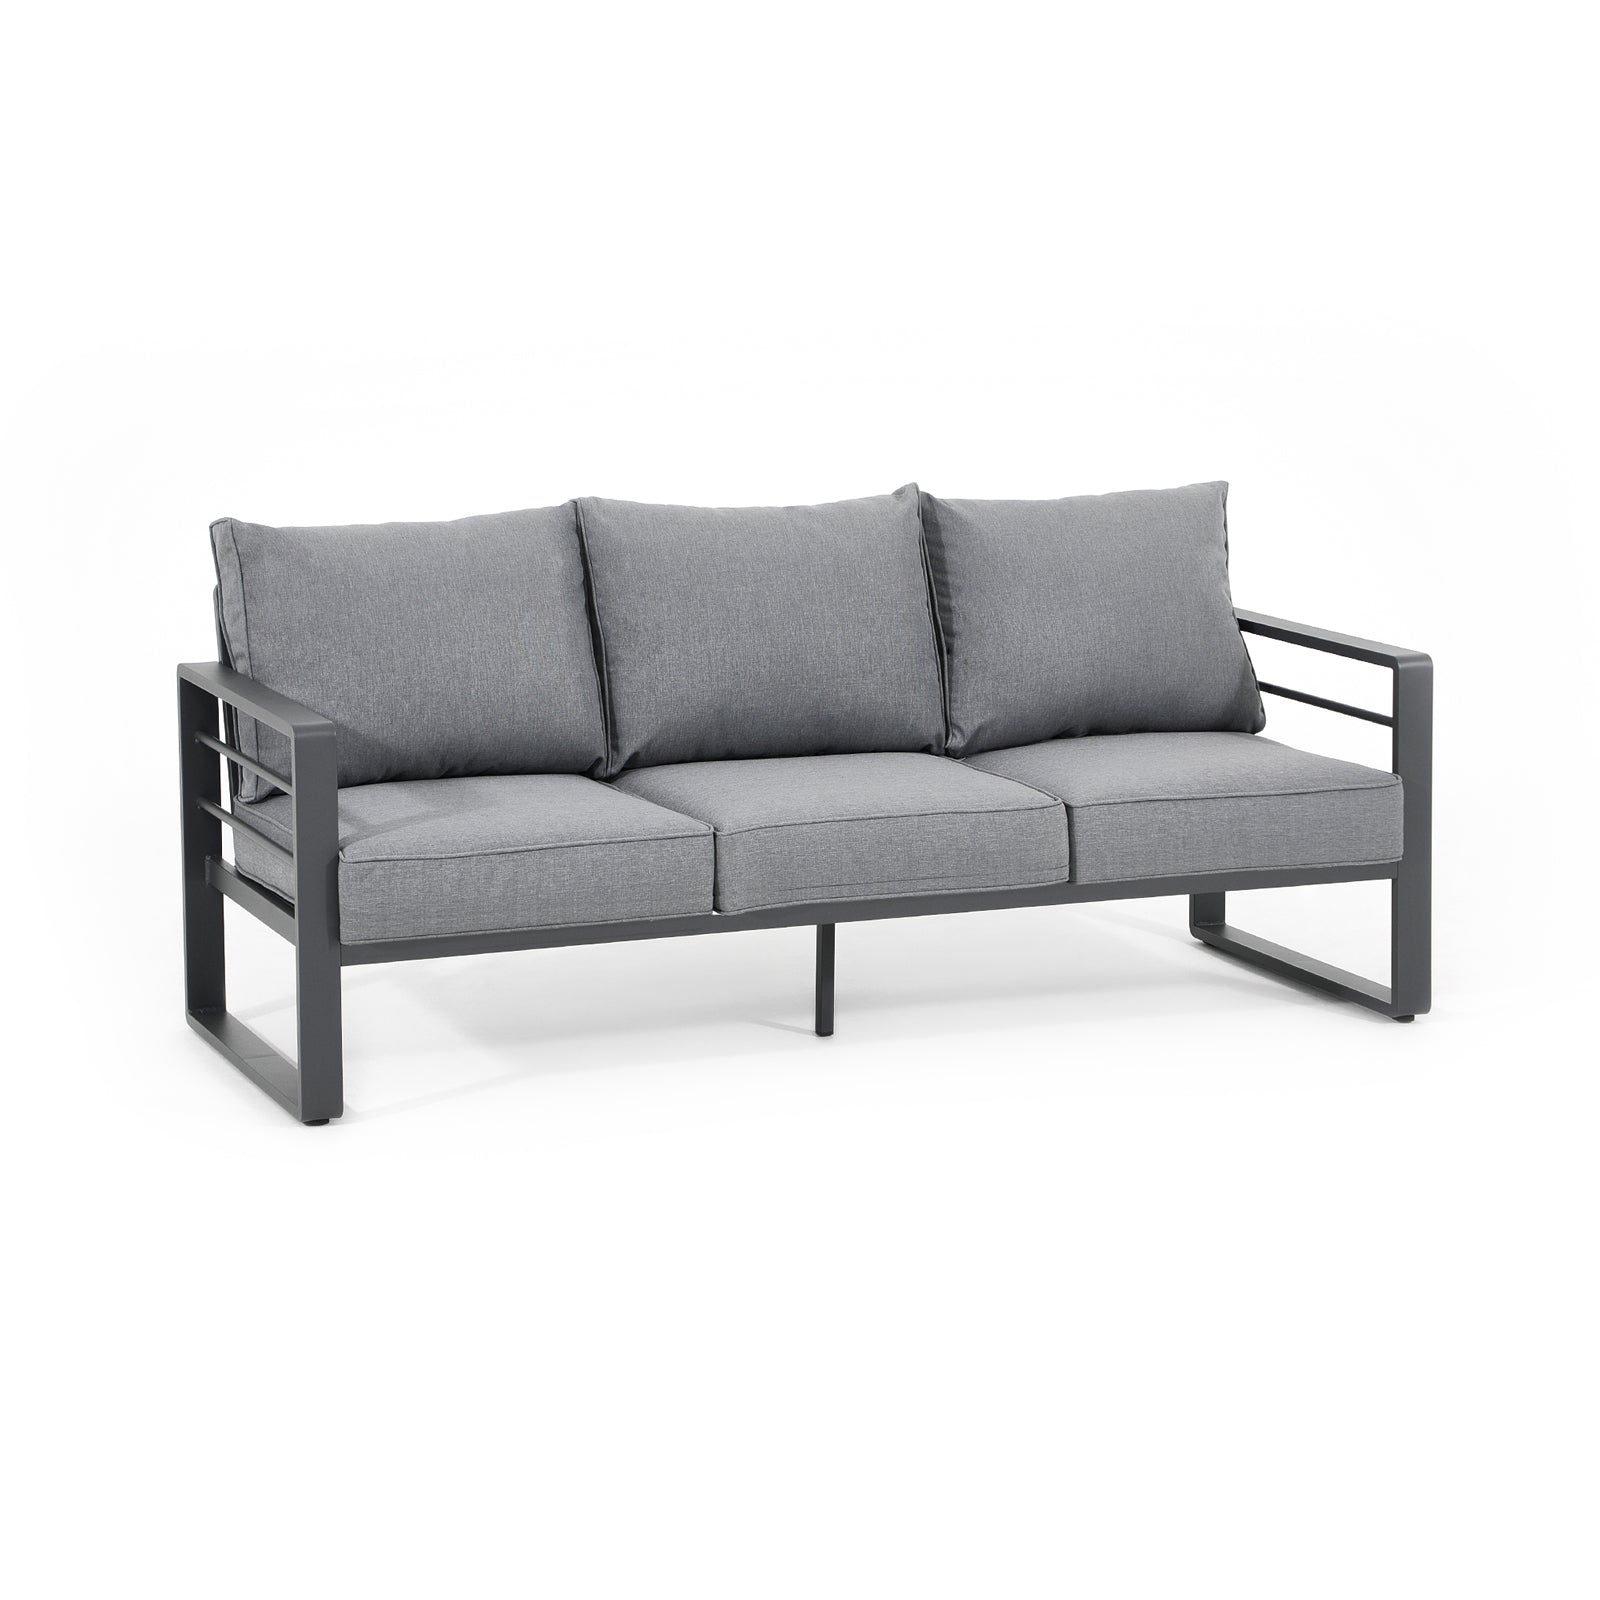 Salina outdoor dark grey sofa set with aluminum frame, grey cushions,right - Jardina Furniture